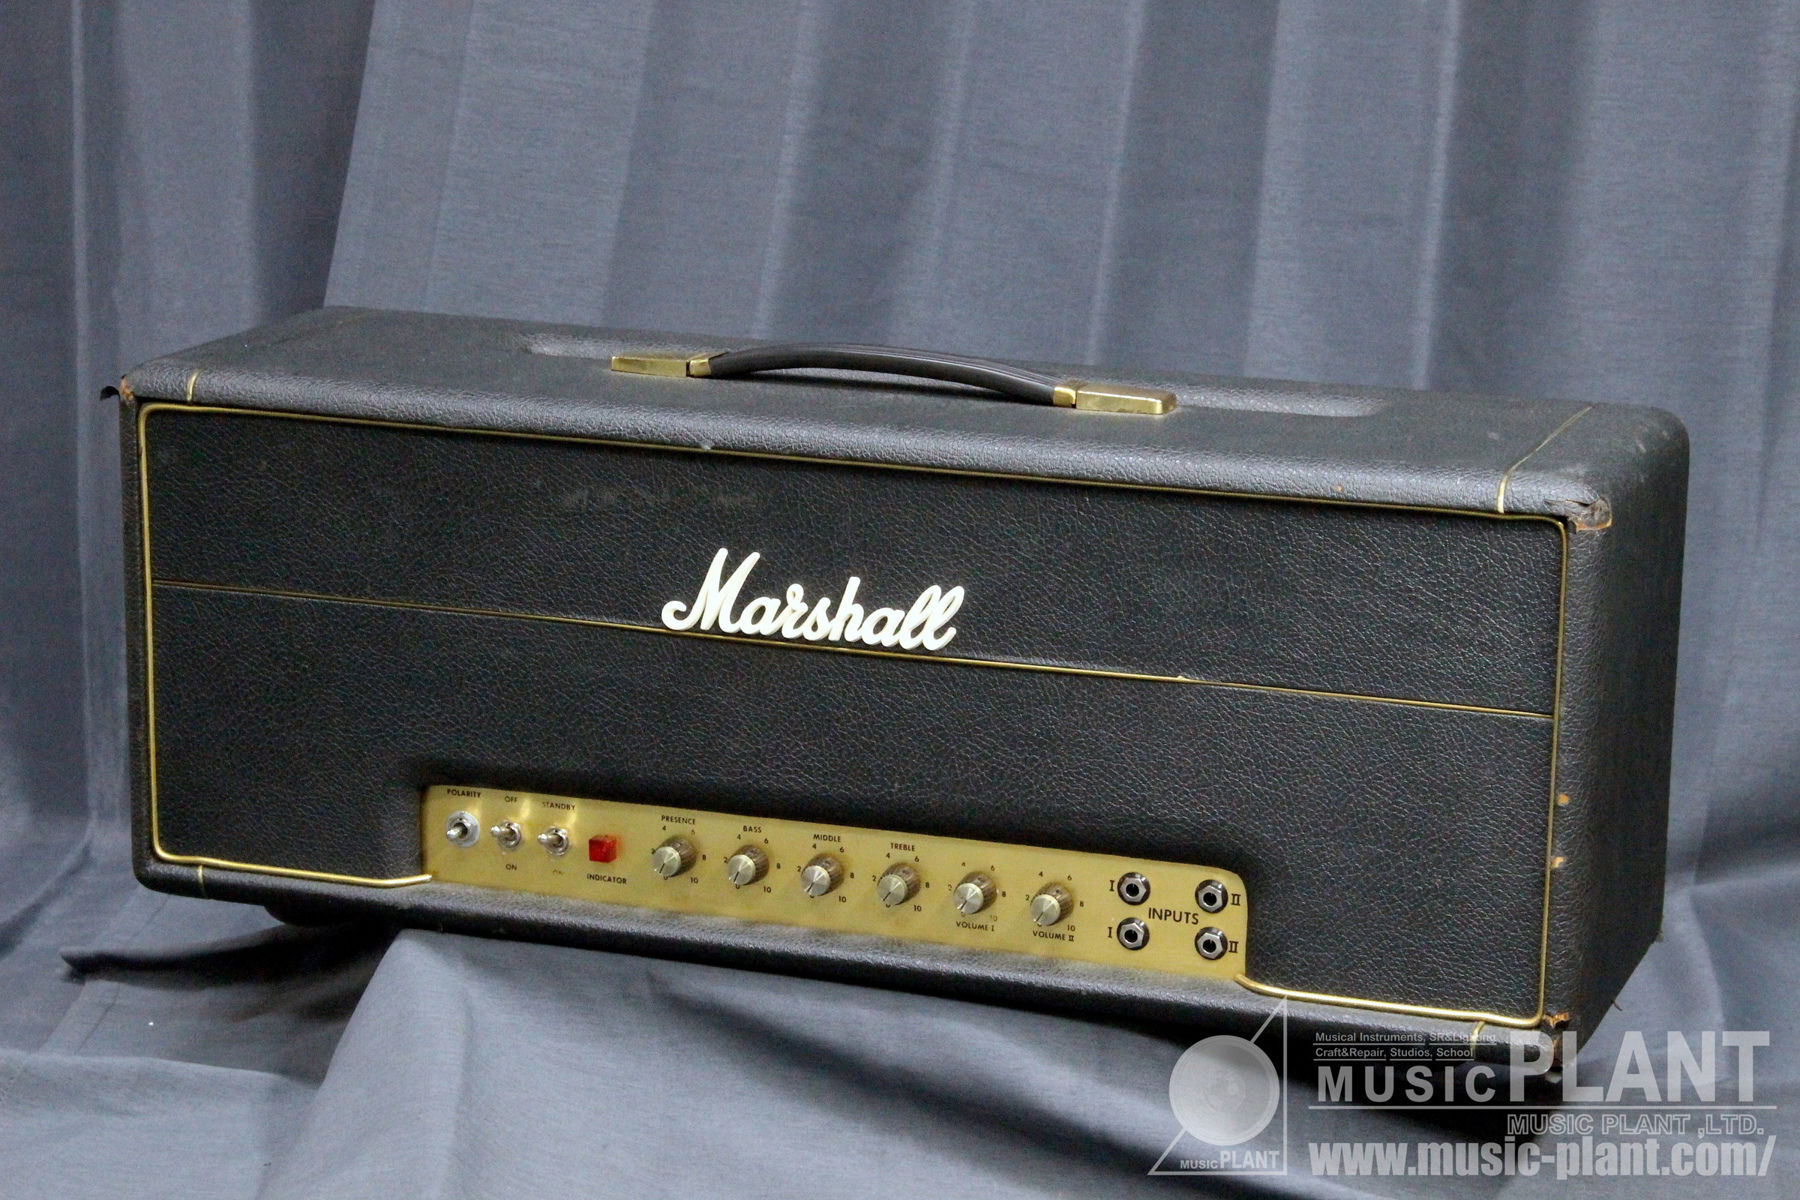 Marshall ギターアンプヘッド1959 SUPER LEAD 100W中古()売却済みです